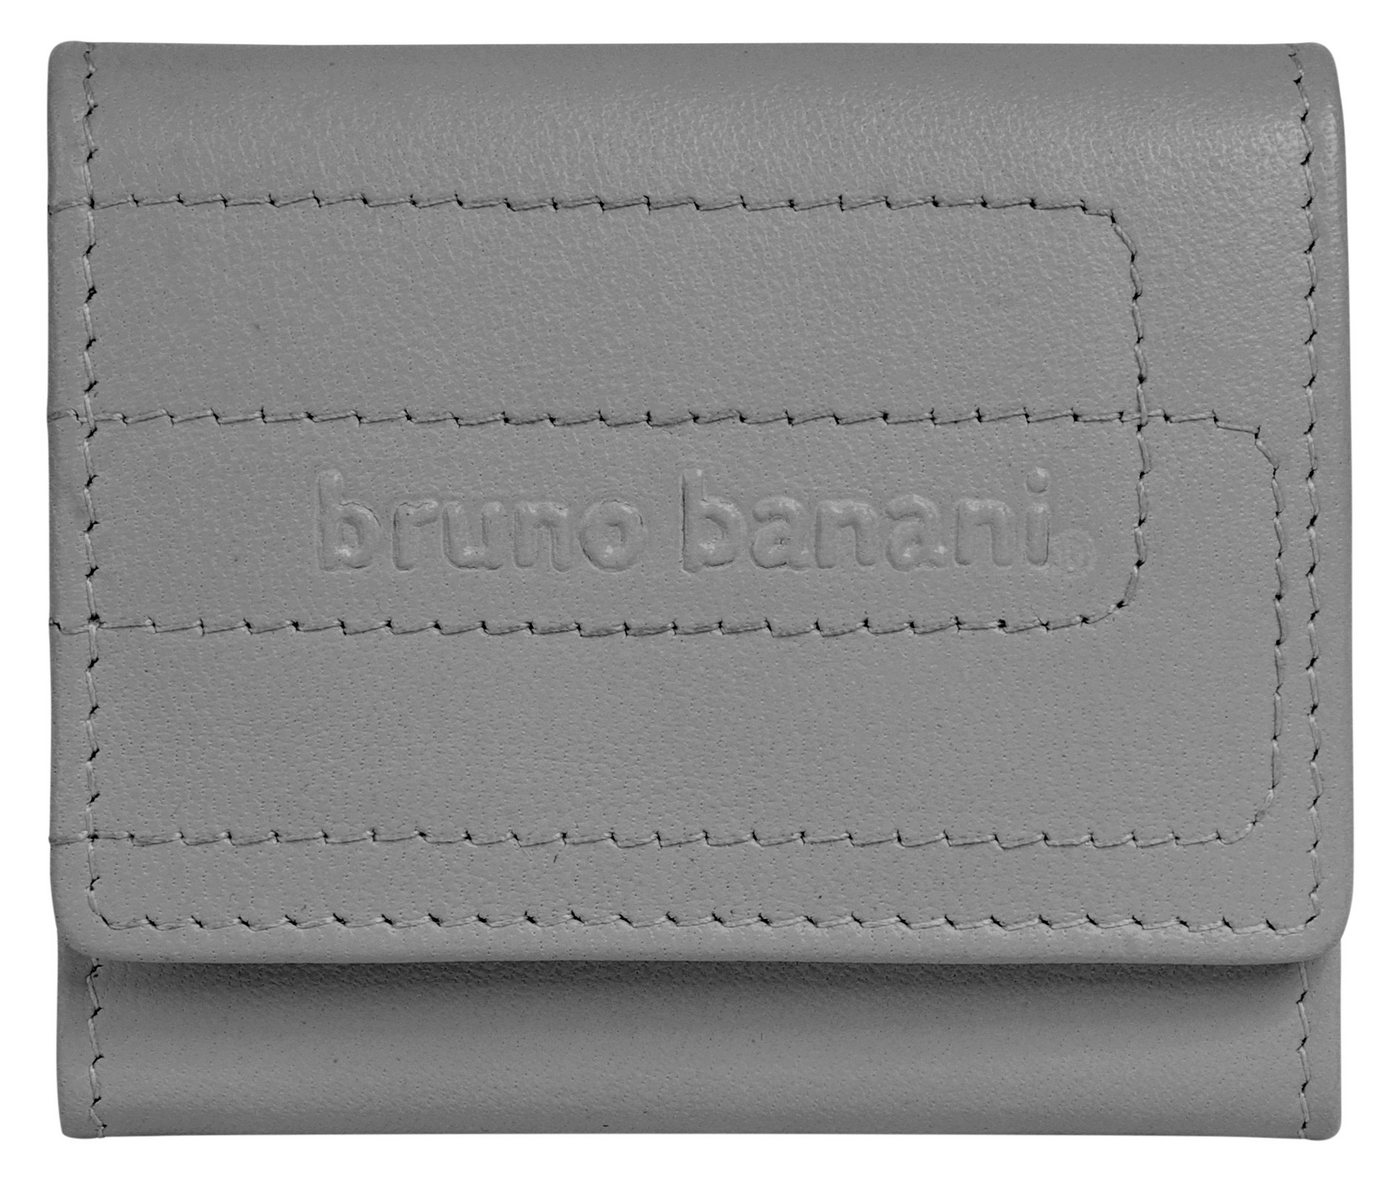 Bruno Banani Geldbörse, echt Leder von Bruno Banani